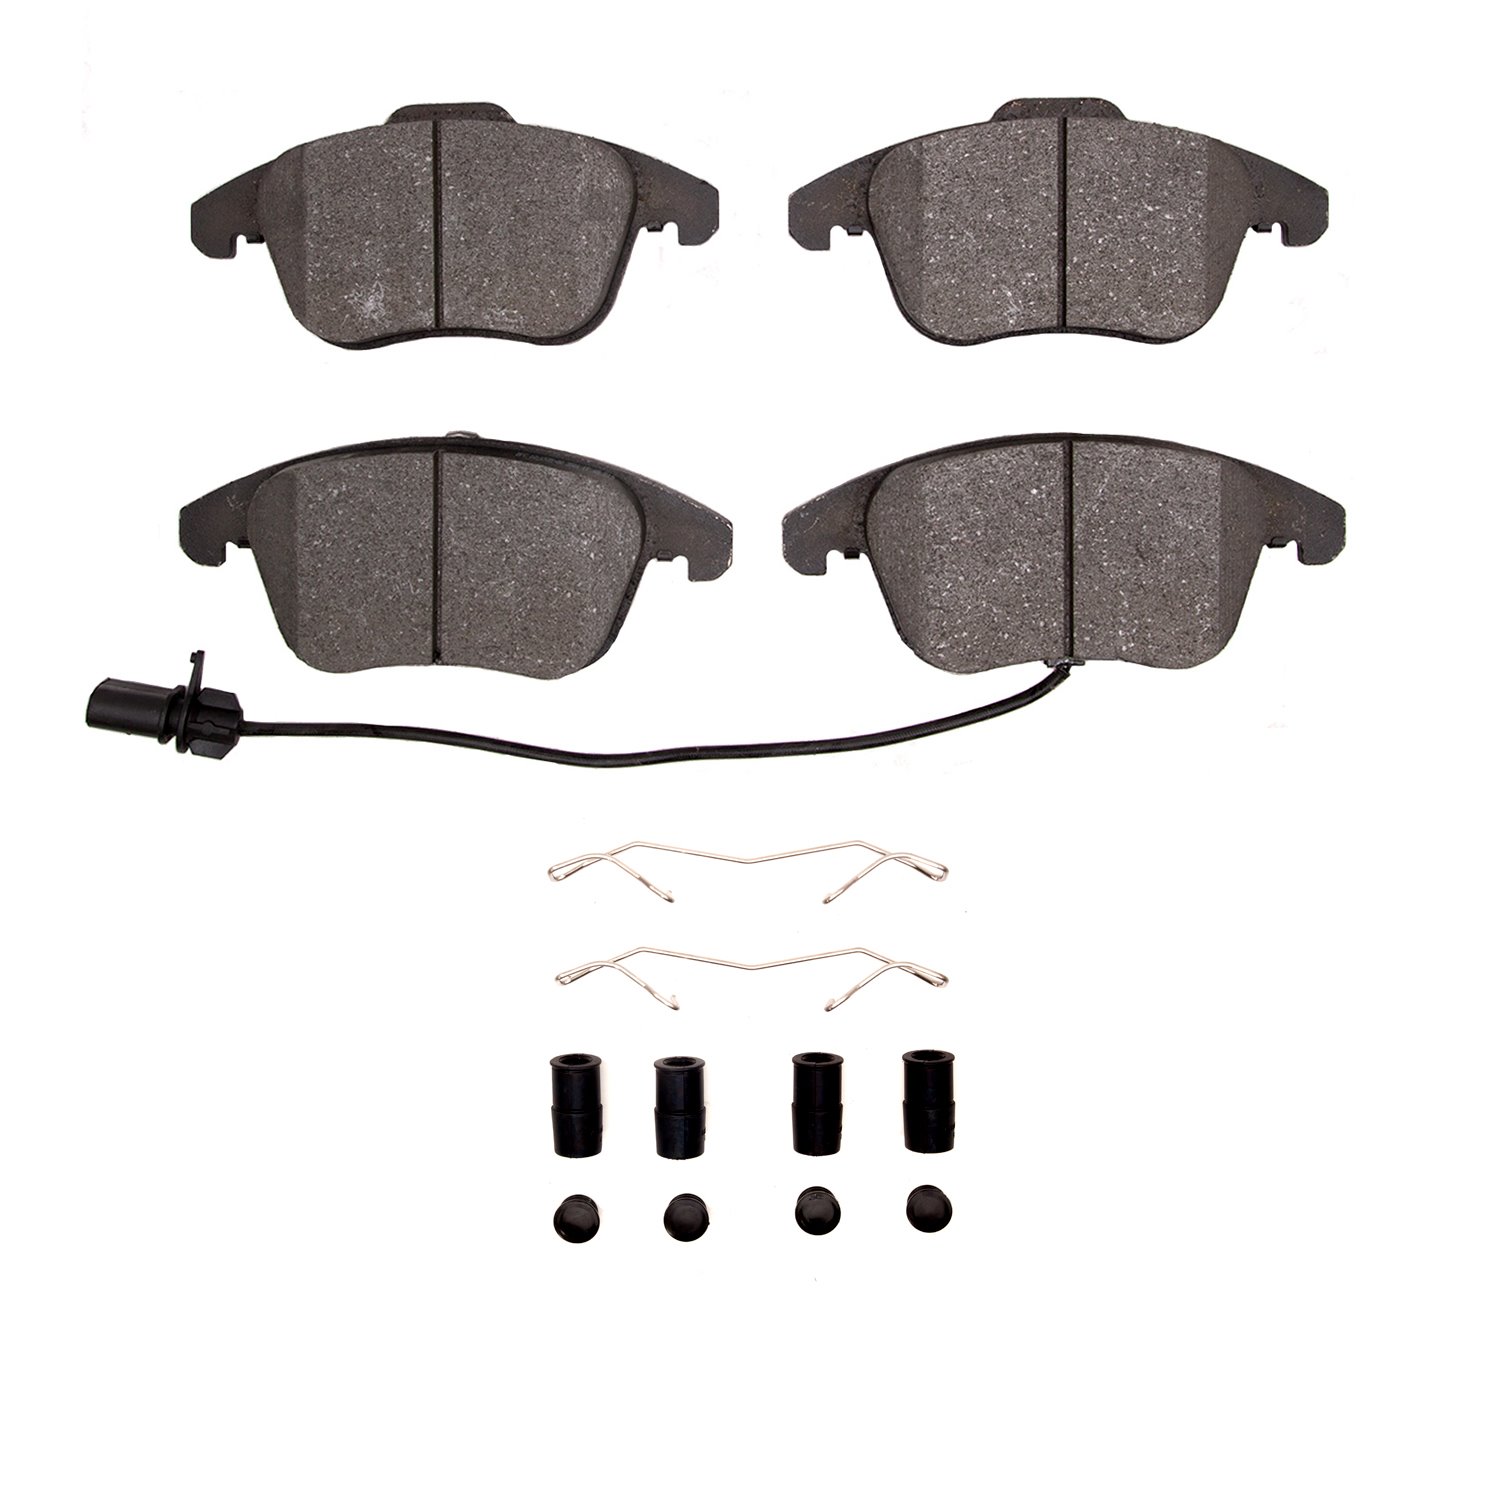 1311-1535-02 3000-Series Semi-Metallic Brake Pads & Hardware Kit, 2009-2016 Audi/Volkswagen, Position: Front